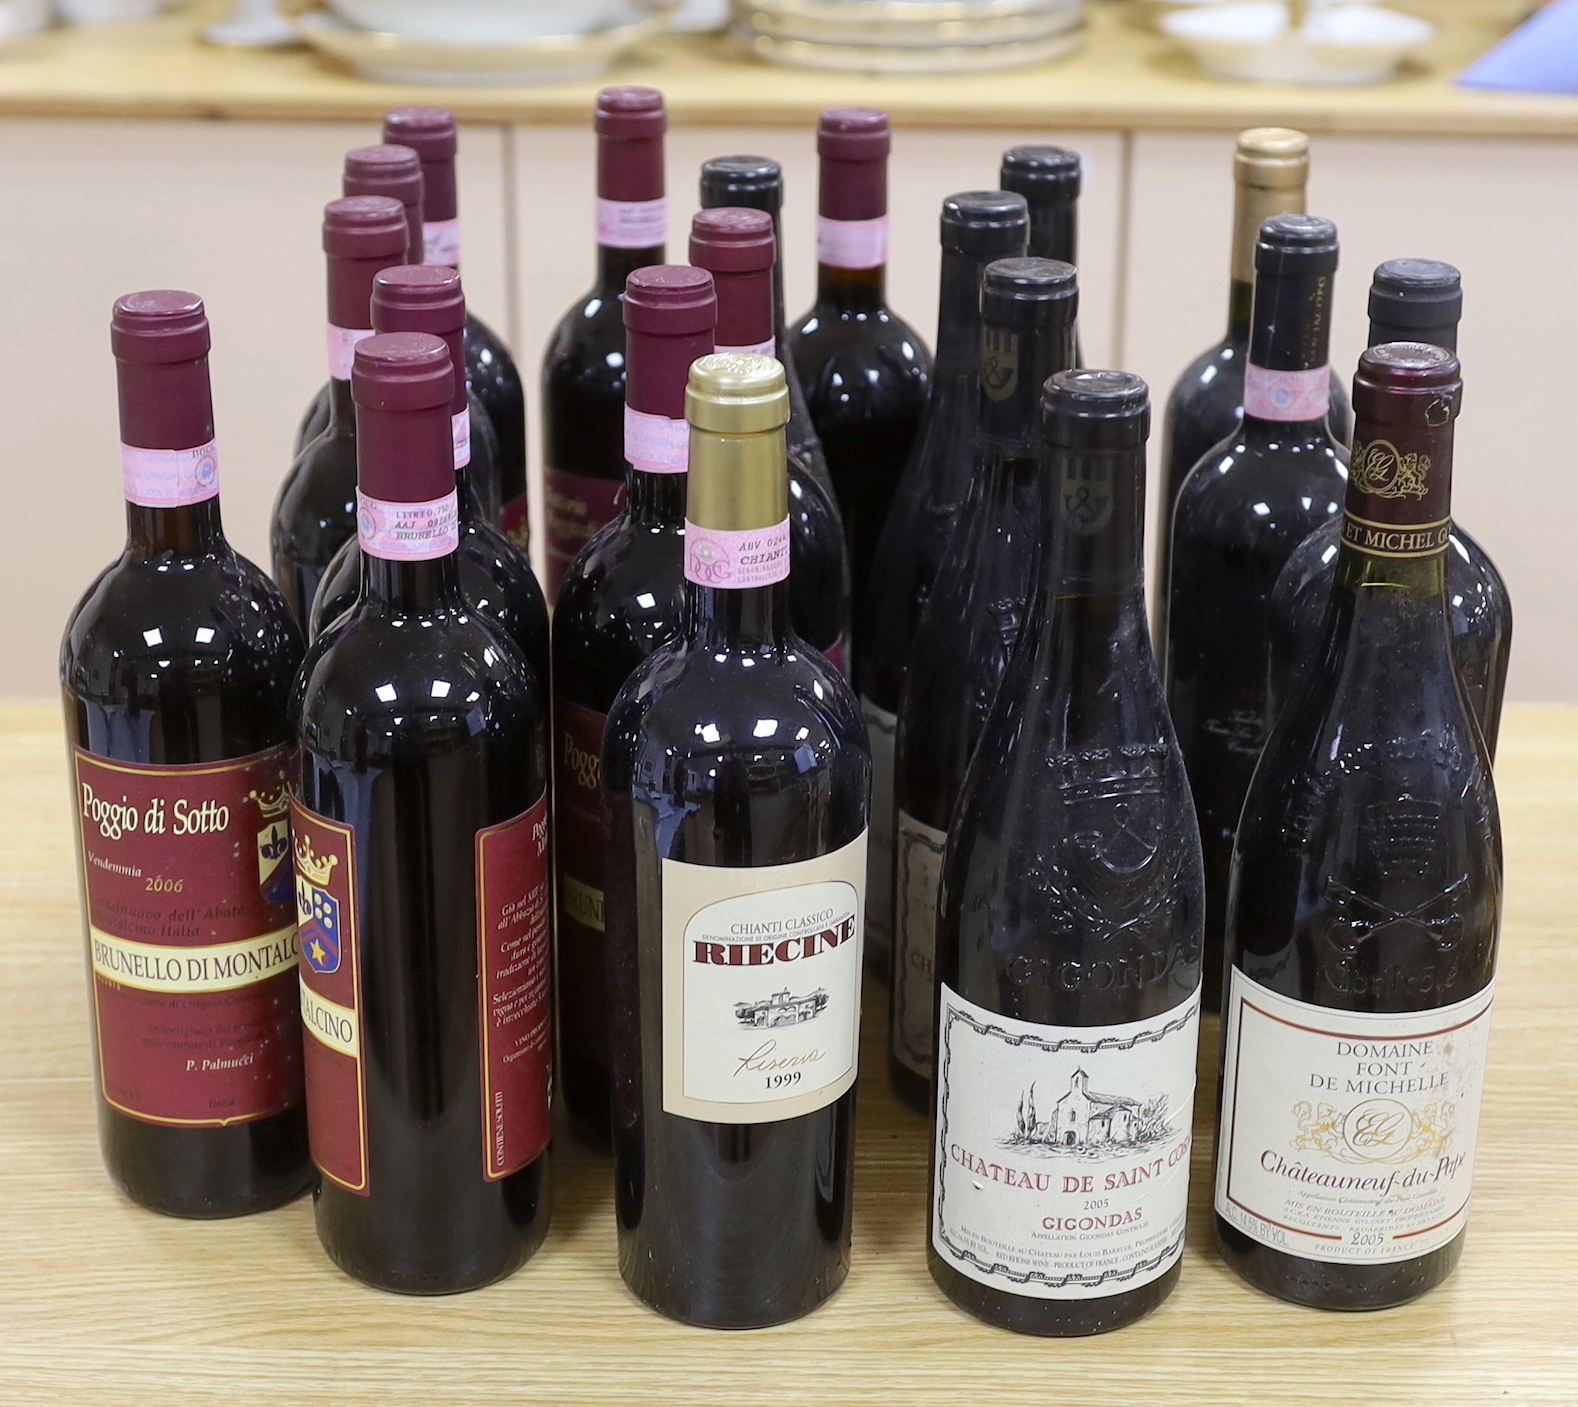 Twenty bottles of red wine including; Chateauneuf-du-Pape 2005, Chateau de Saint Cosme 2005, Chianti 1999, etc.